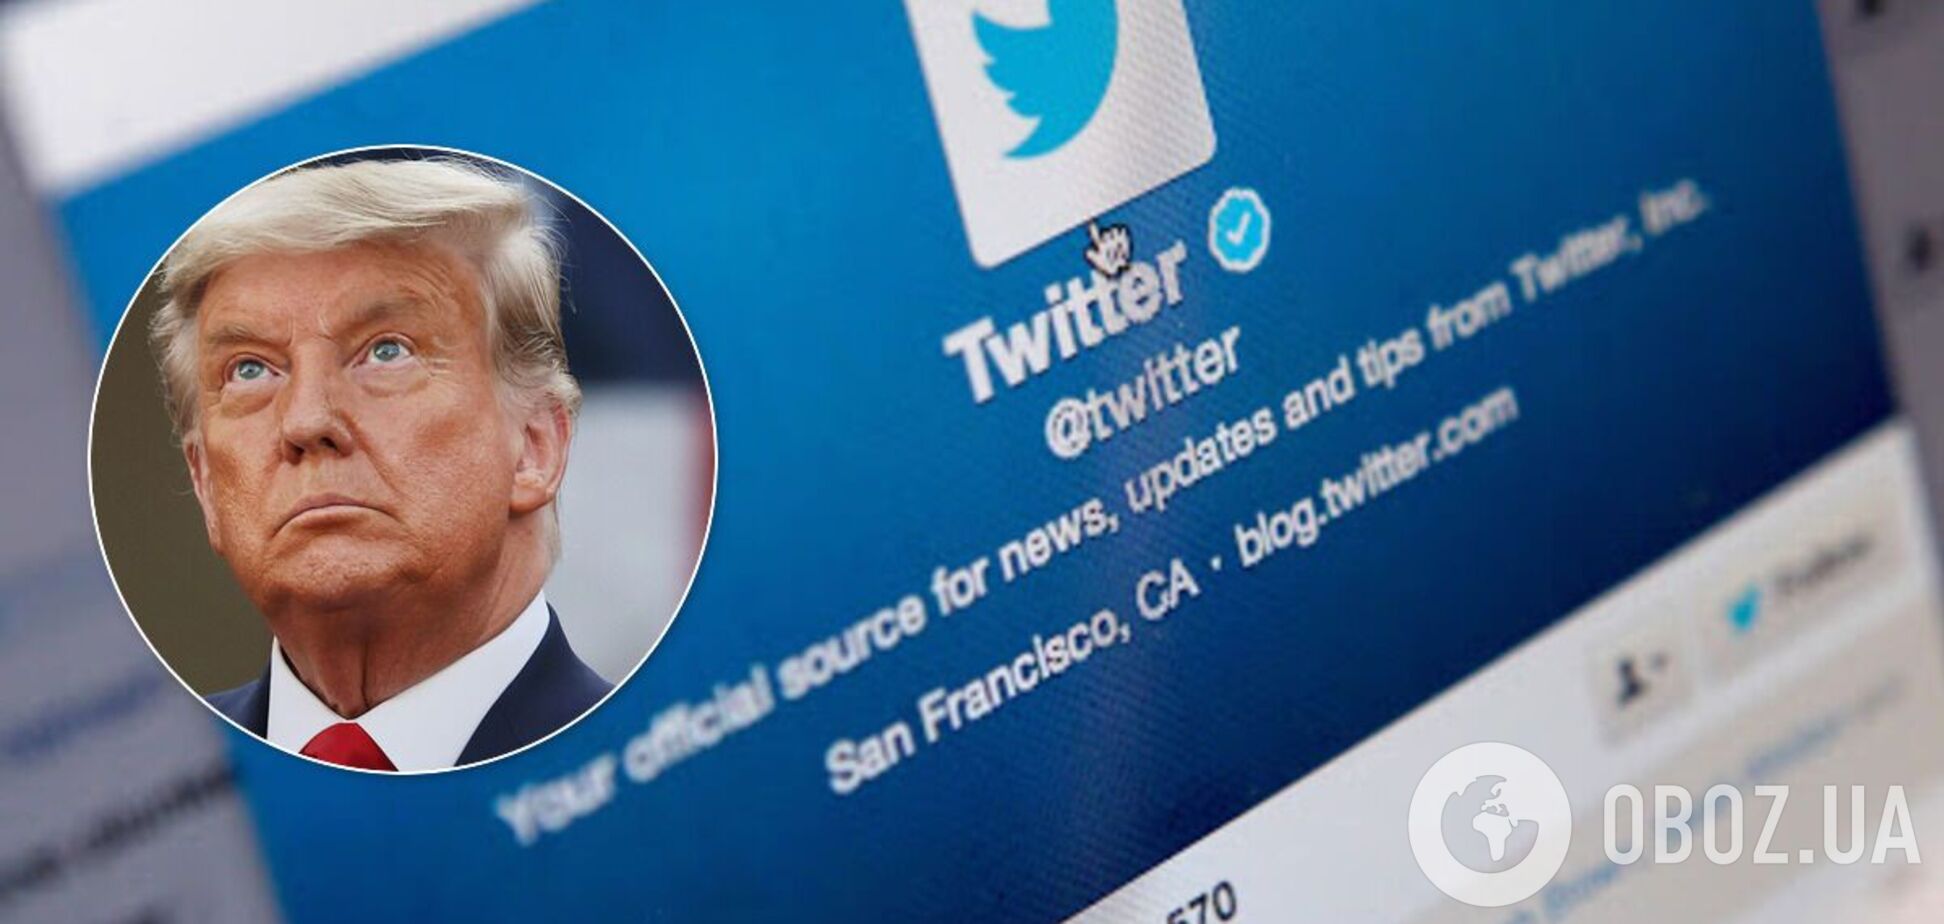 Акції Twitter обвалилися після того, як назавжди видалили акаунт Трампа